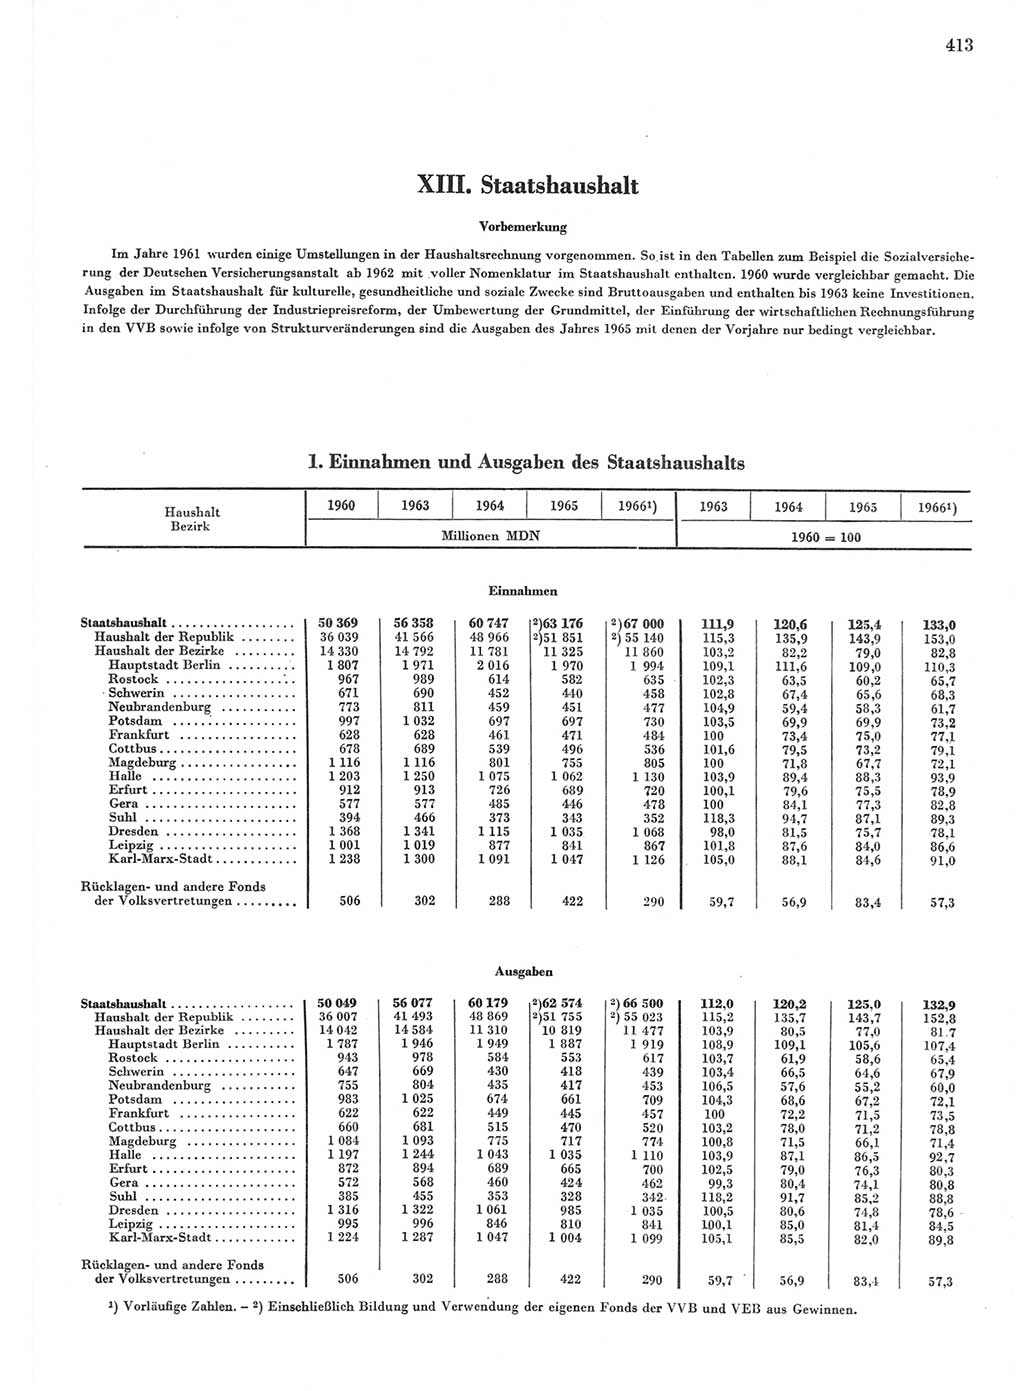 Statistisches Jahrbuch der Deutschen Demokratischen Republik (DDR) 1967, Seite 413 (Stat. Jb. DDR 1967, S. 413)